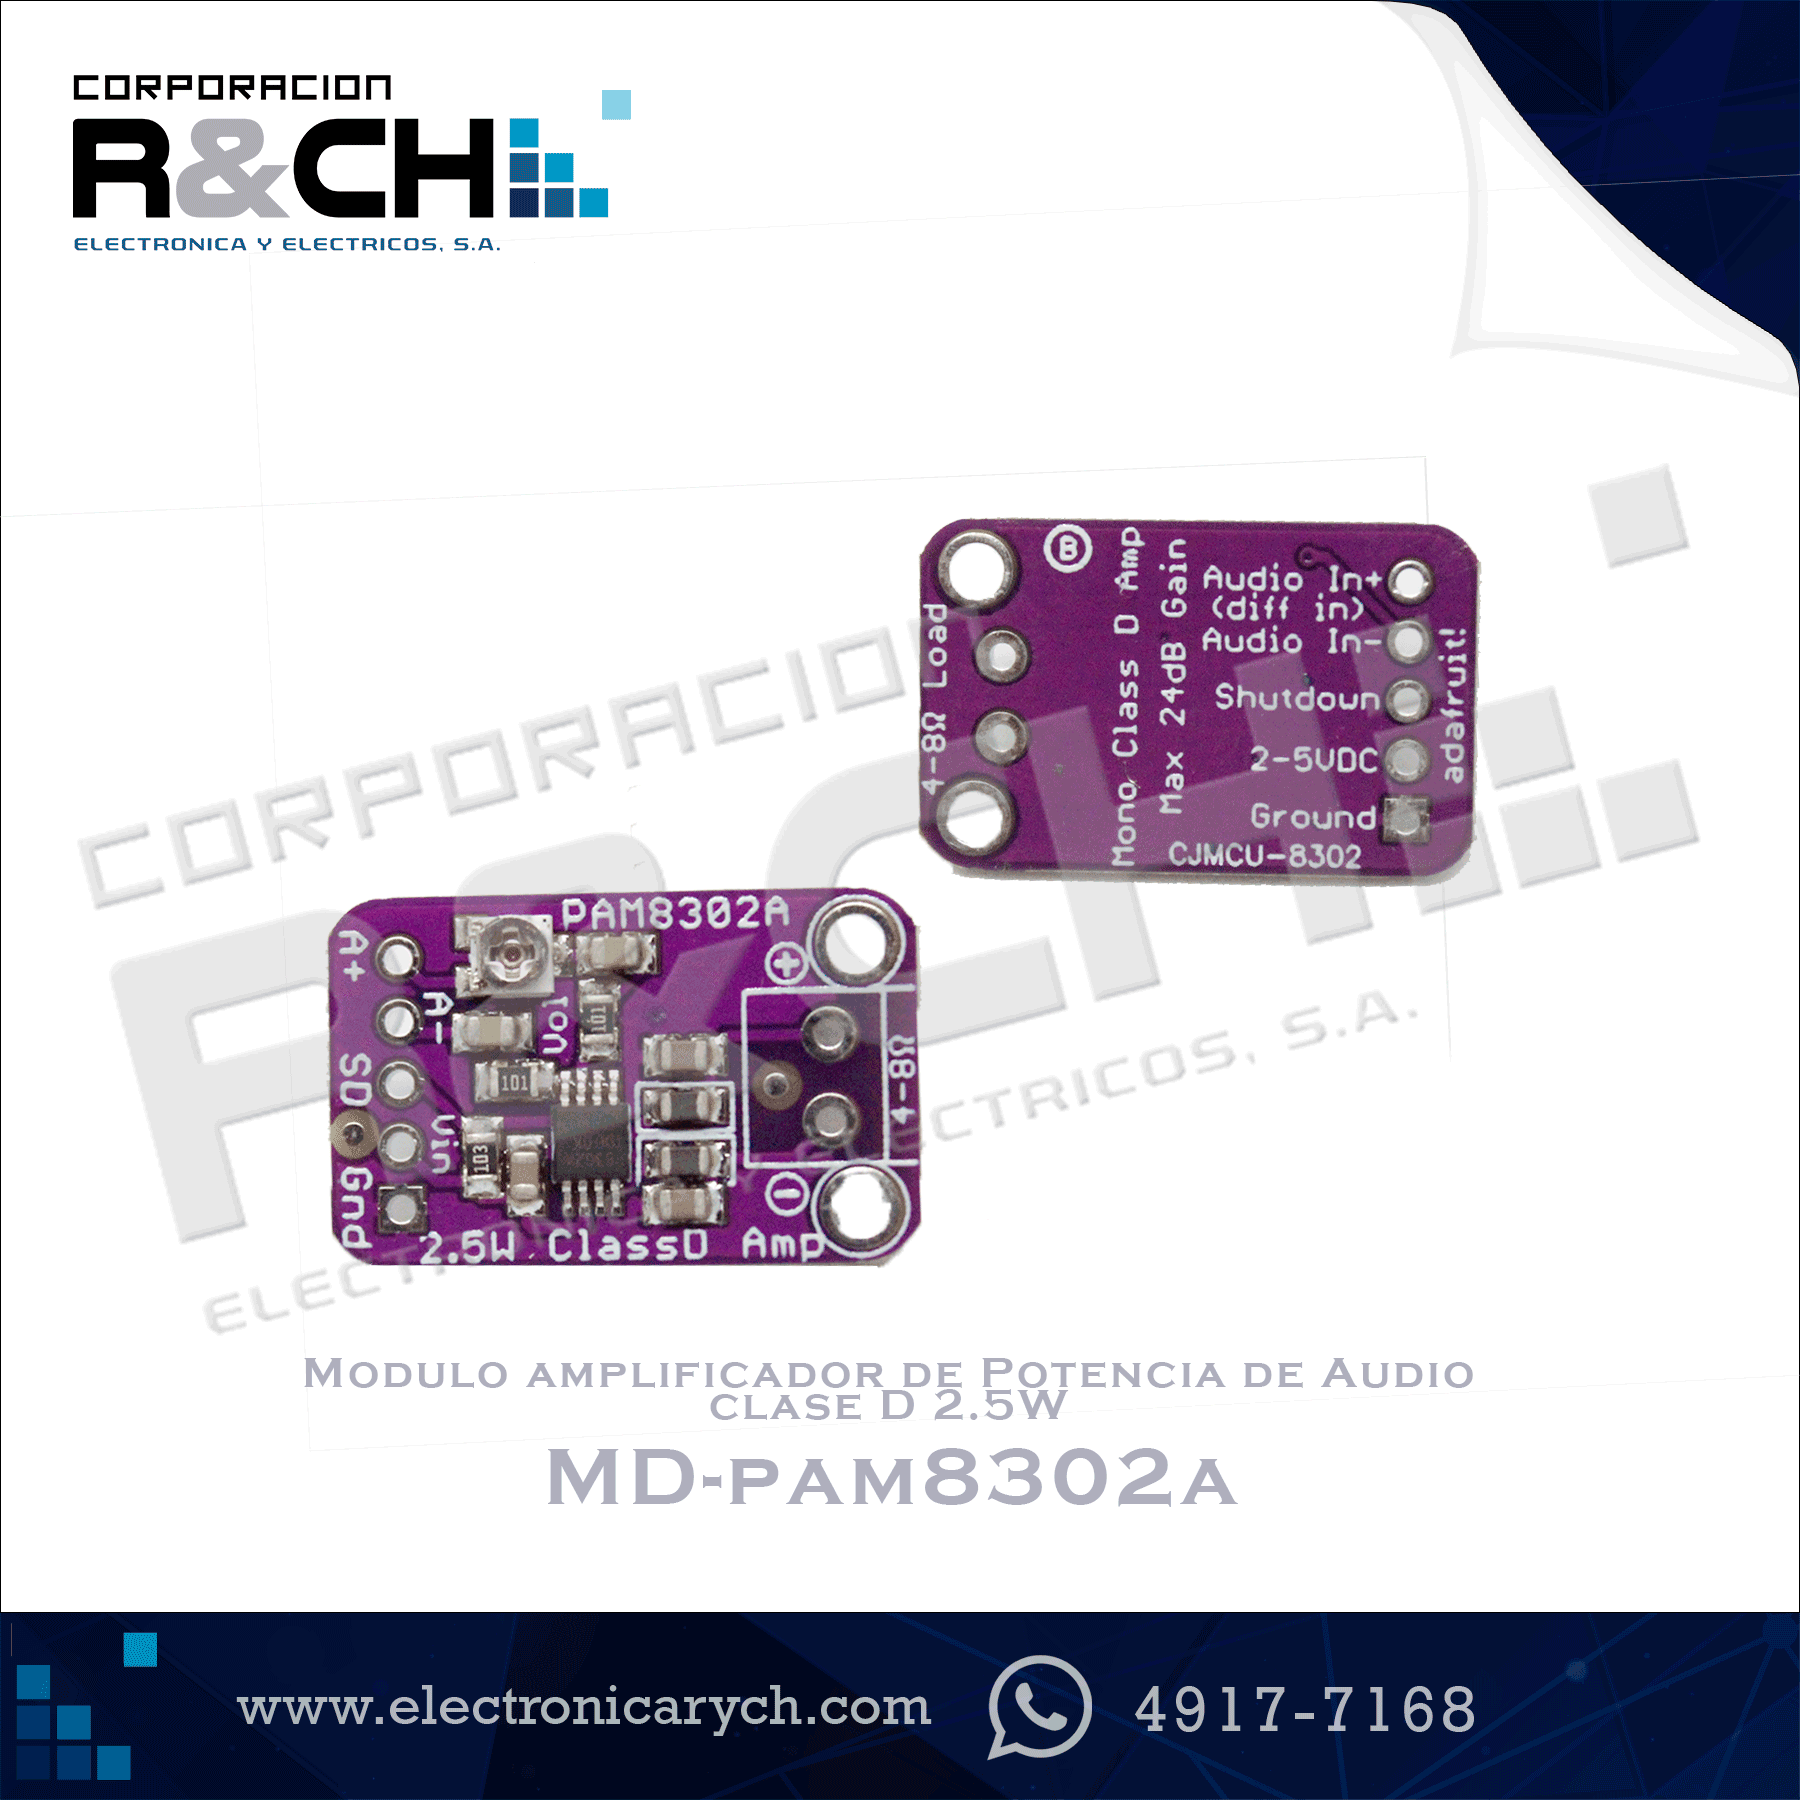 MD-PAM8302A Modulo amplificador de Potencia de Audio clase D 2.5W